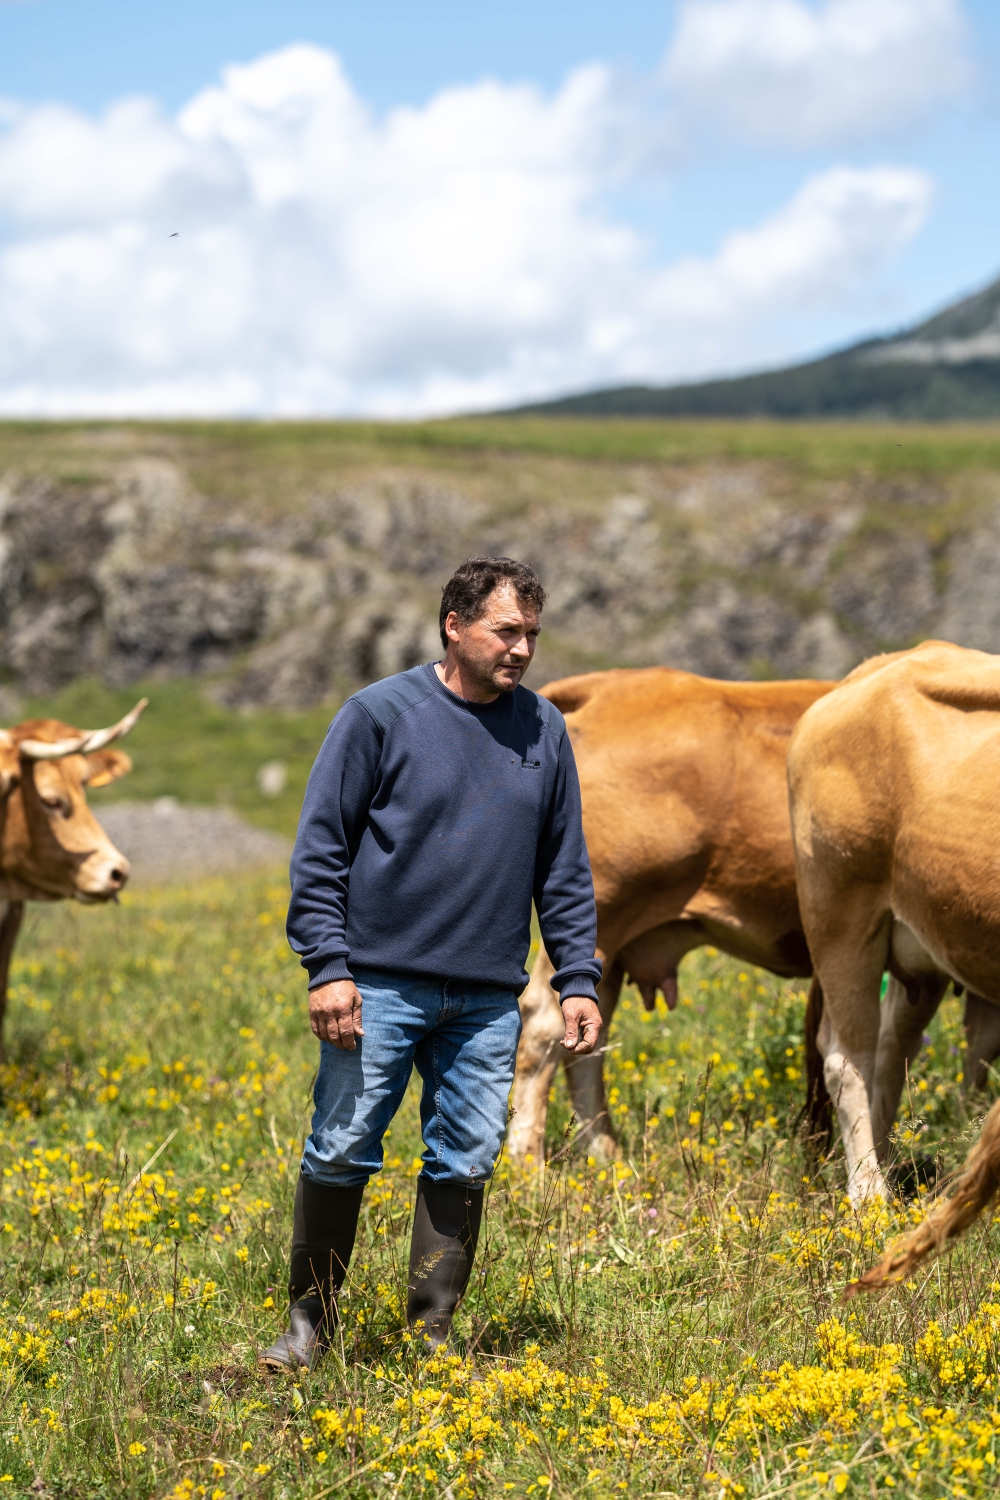  « Notre objectif ? Valoriser nos pratiques d’élevage, tout en offrant de vraies garanties de traçabilité et de qualité aux consommateurs », affiche Pascal Laurent, éleveur à Cros-de-Géorand.